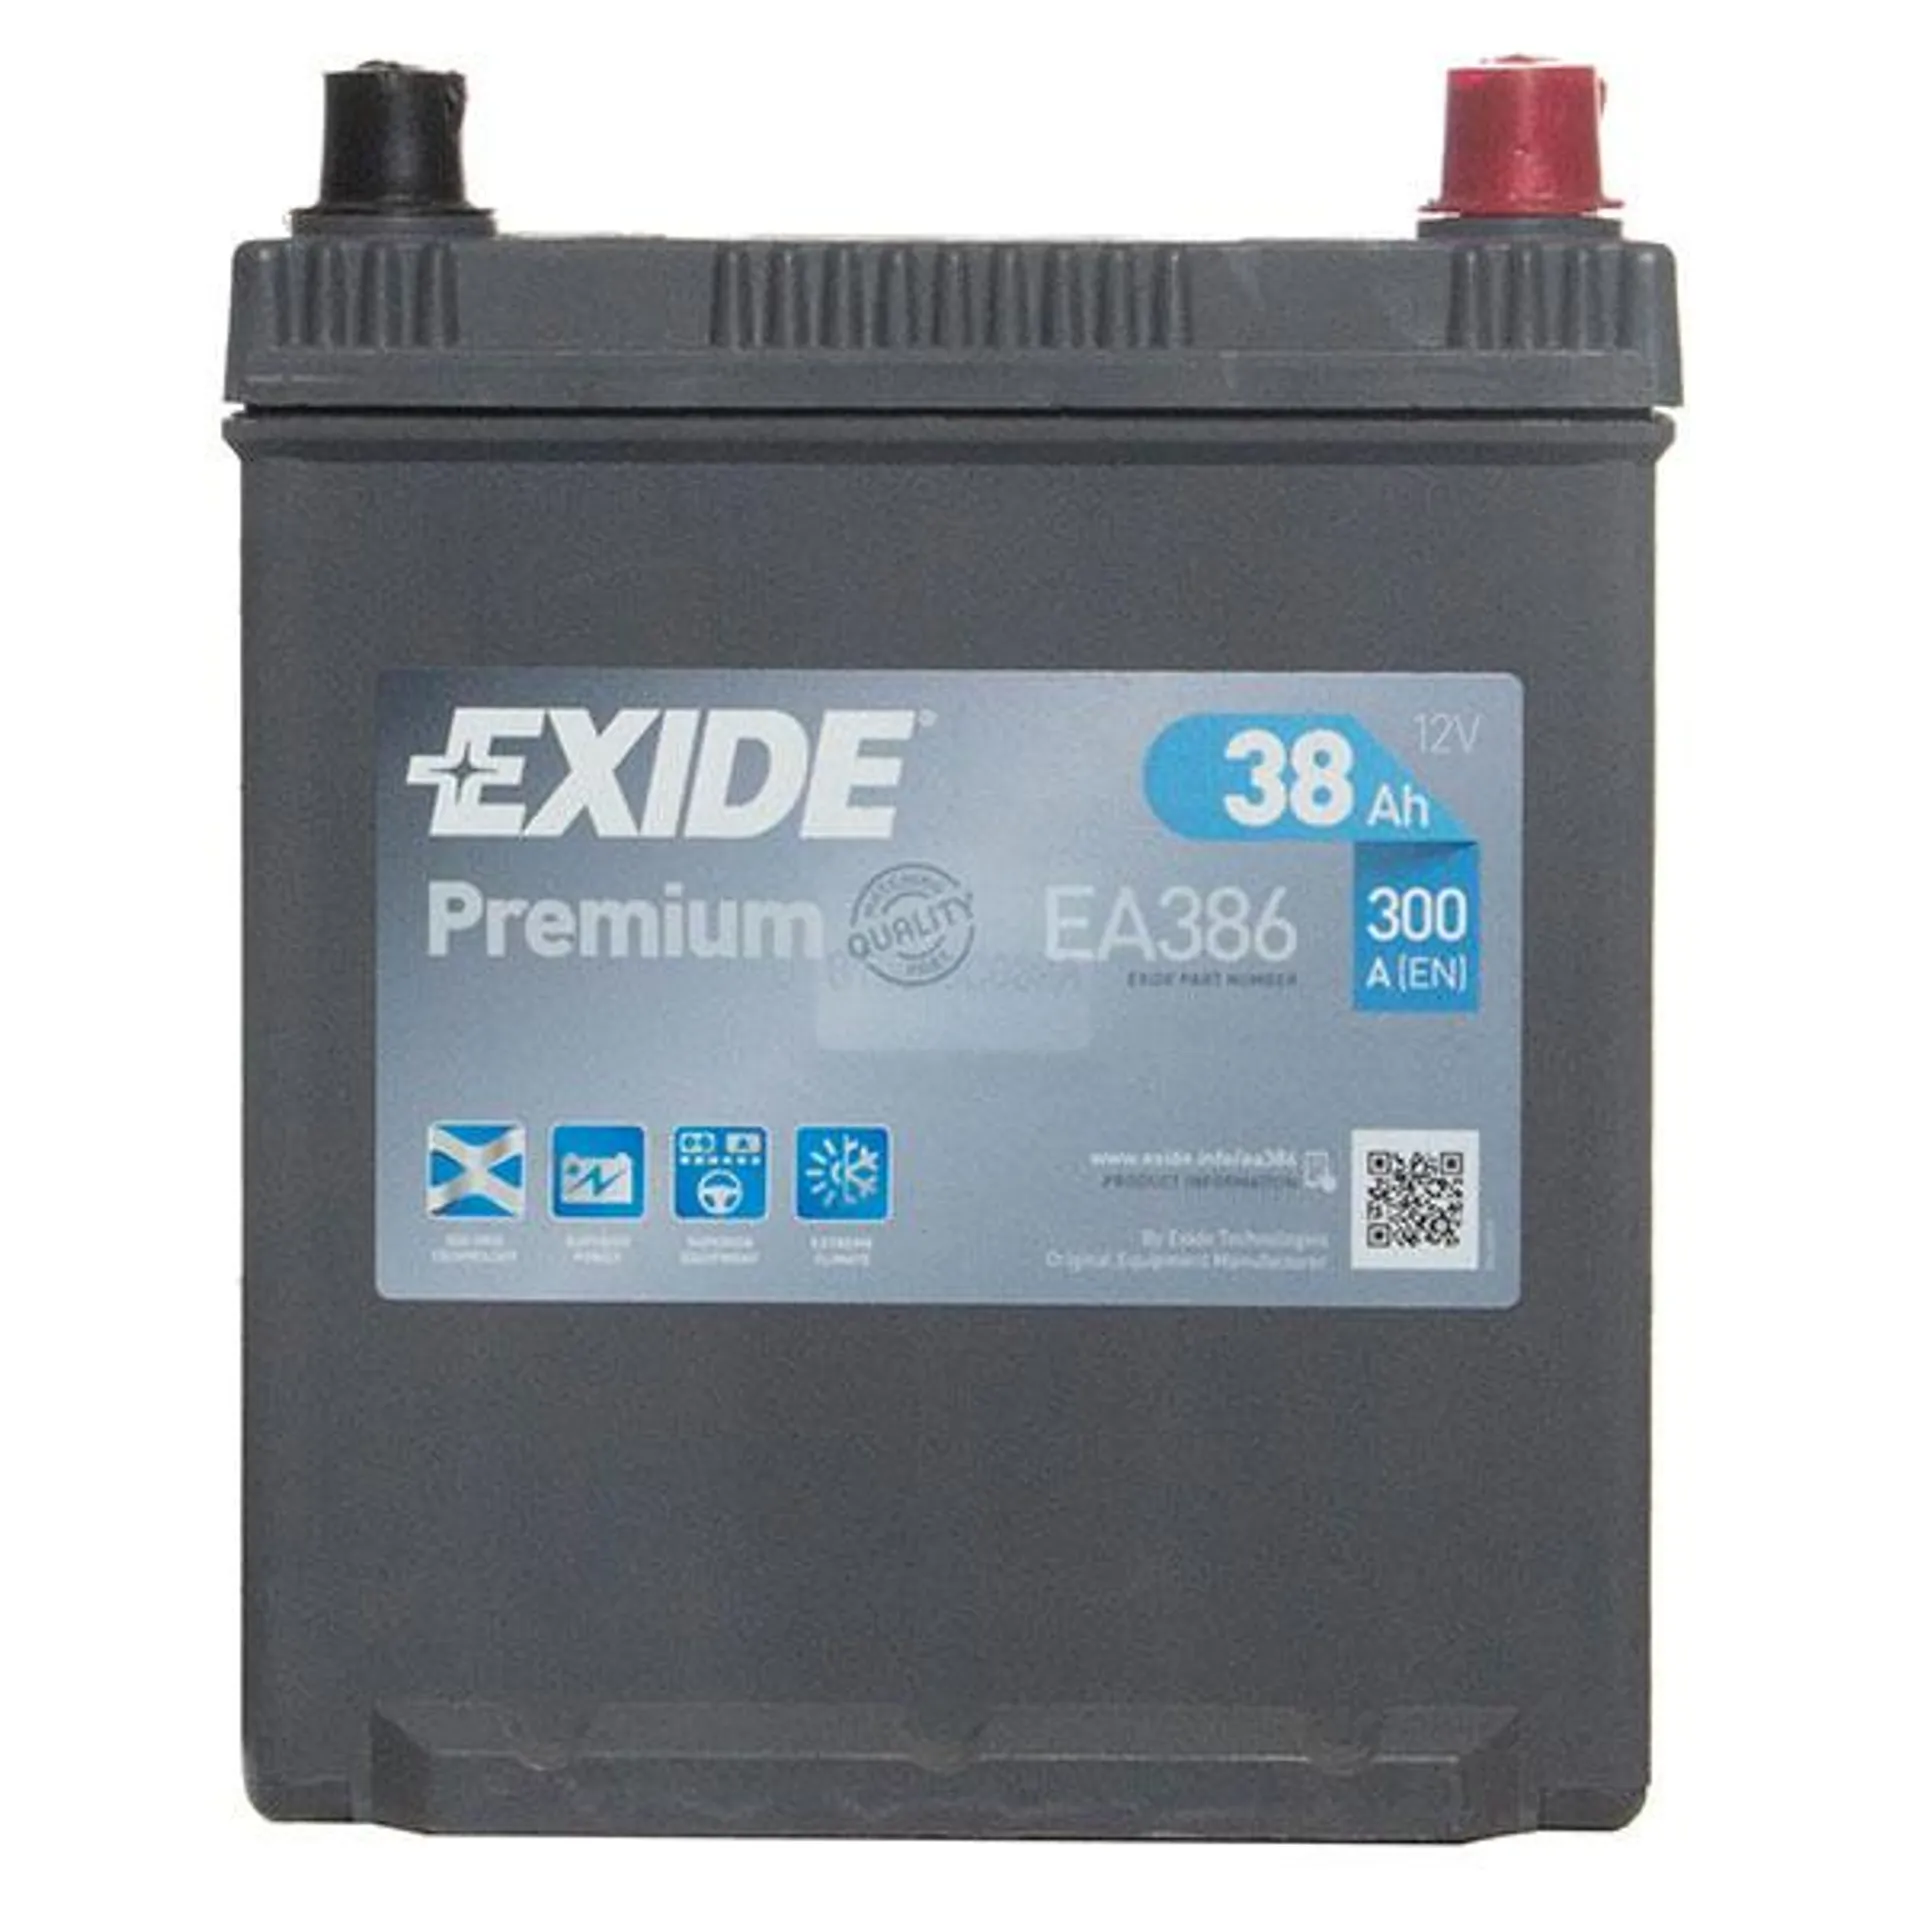 Exide Premium 054 Car Battery (38Ah) - 5 Year Guarantee